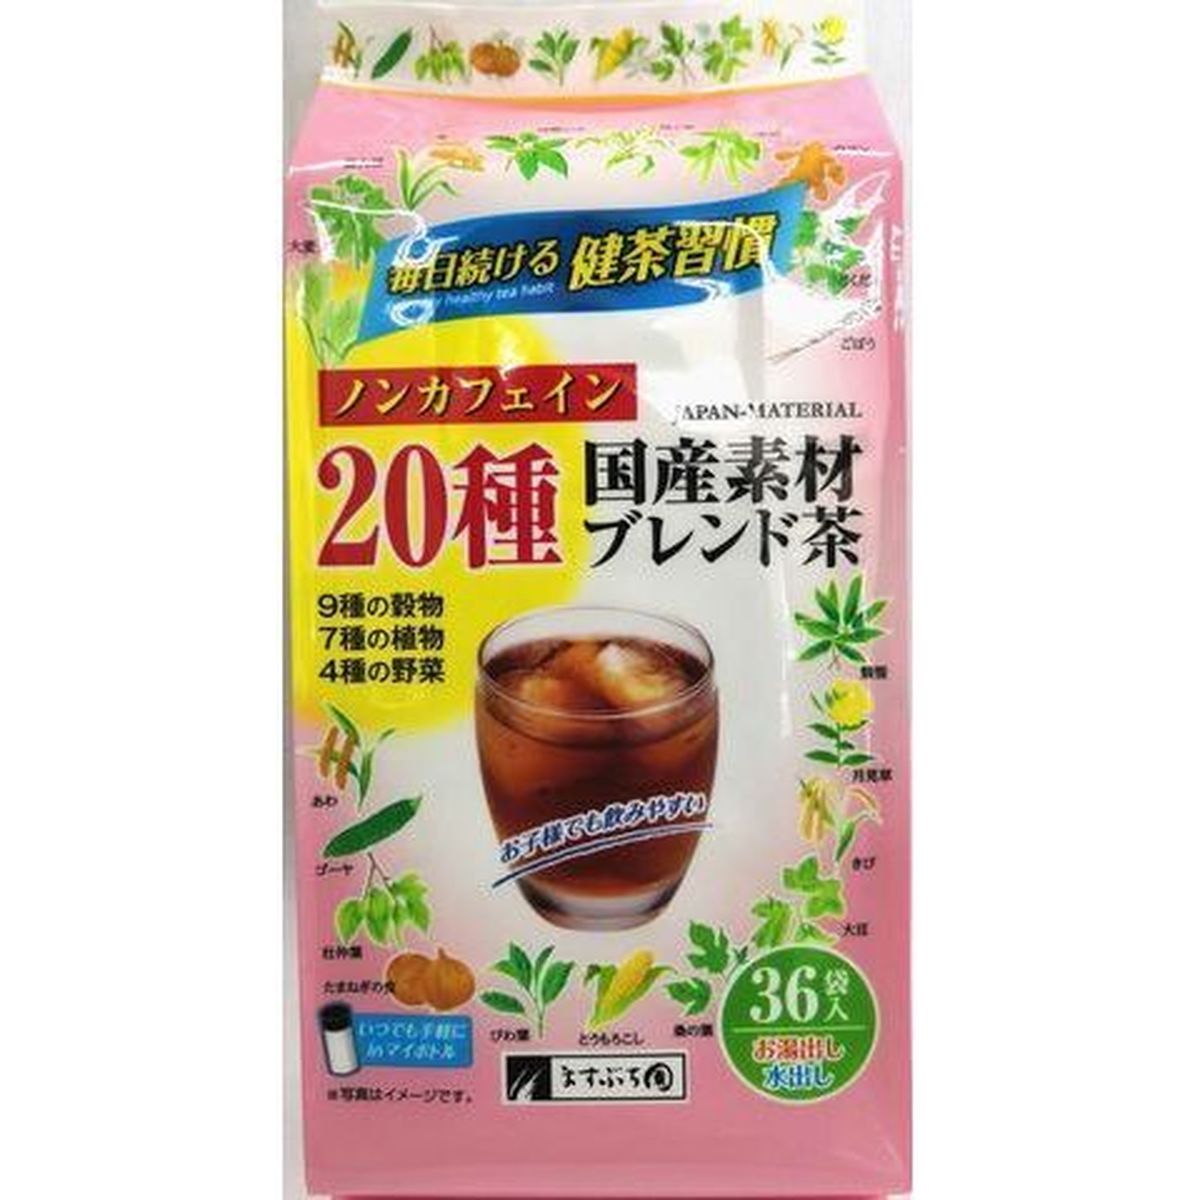 【10個入リ】マスブチ園 ノンカフェイン20種 ブレンド茶ティーパック 5g